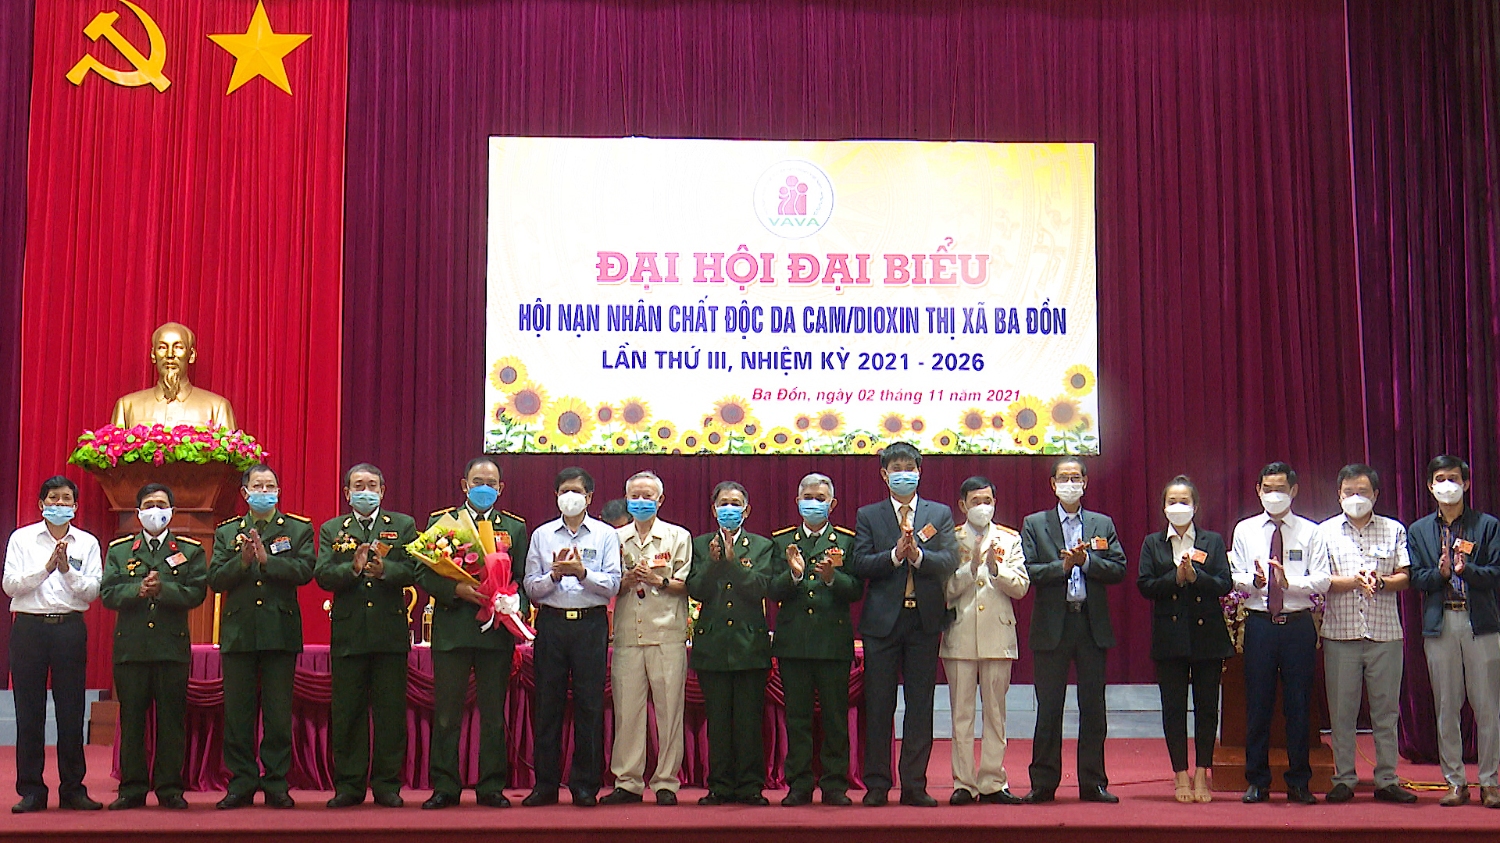 BCH Hội nạn nhân chất độc Da cam Dioxin thị xã Ba Đồn, khóa III, nhiệm kỳ 2021 2026 ra mắt Đại hội